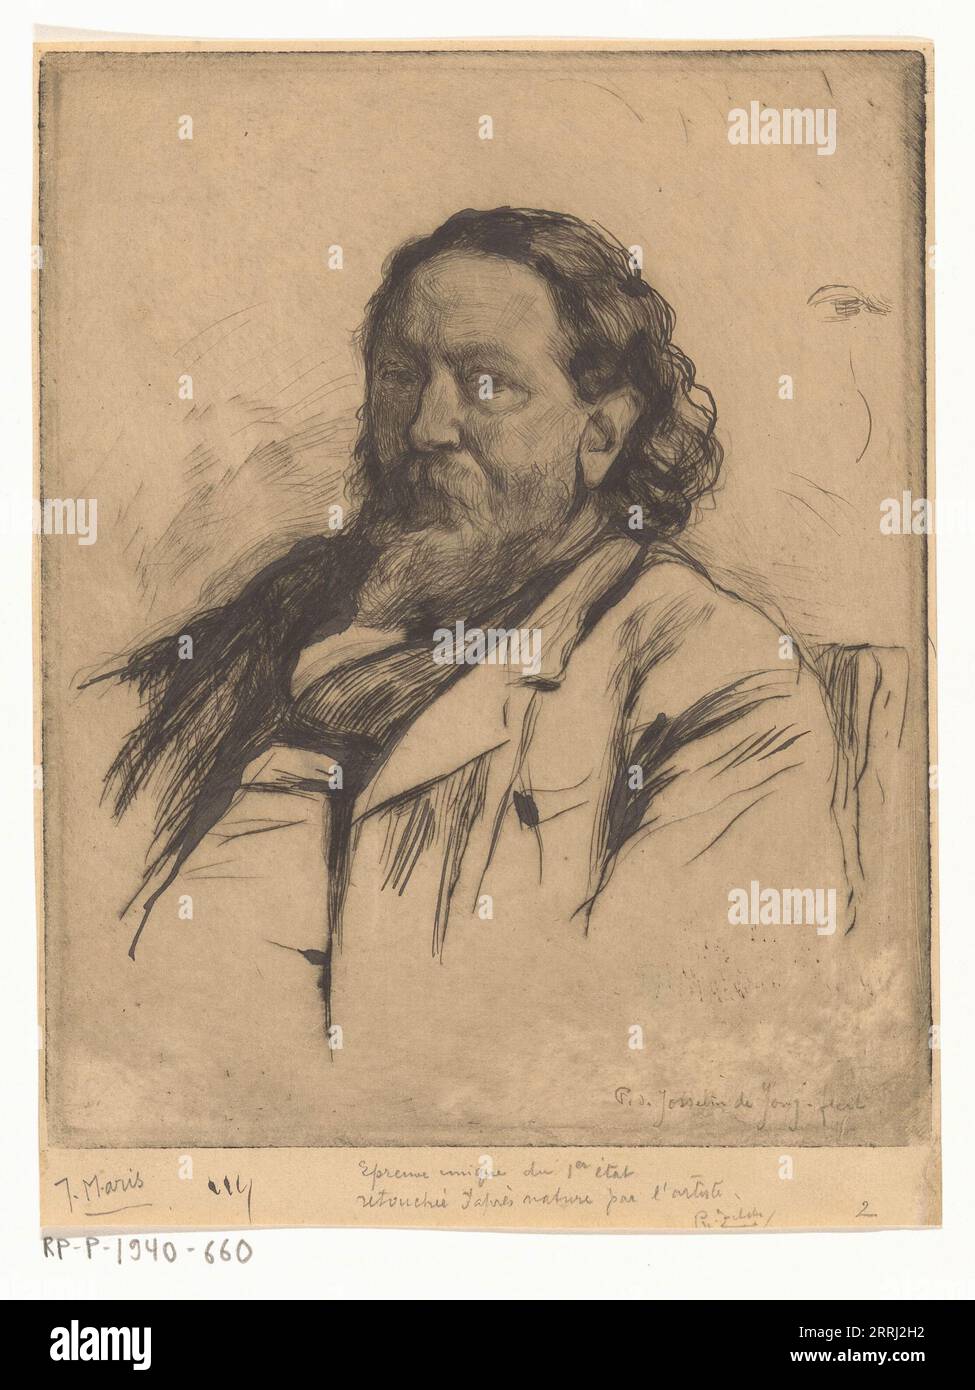 Portrait von Jacob Maris, ca. 1890. „Epreuve Unique du 1er &#xe9;tat, retouch&#xe9;e apr&#xe8;s Nature par l'artiste“. Niederländischer Künstler, Maler, Radierer. Stockfoto